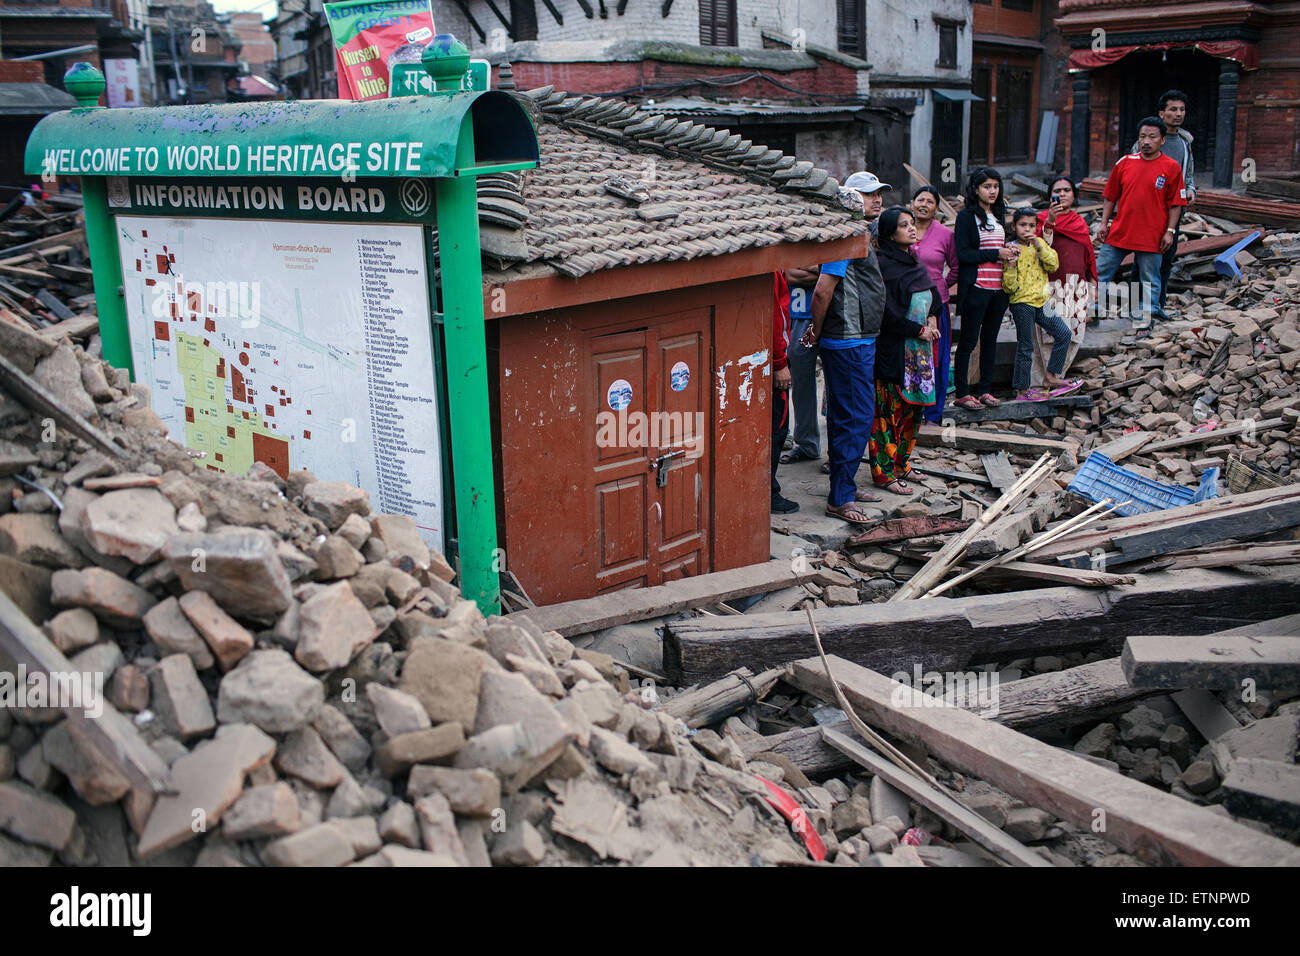 Durbar Square am zweiten Tag nach dem Erdbeben. Menschen am Welterbe-Schild. Kathmandu, Nepal. 26. April 2015. Stockfoto